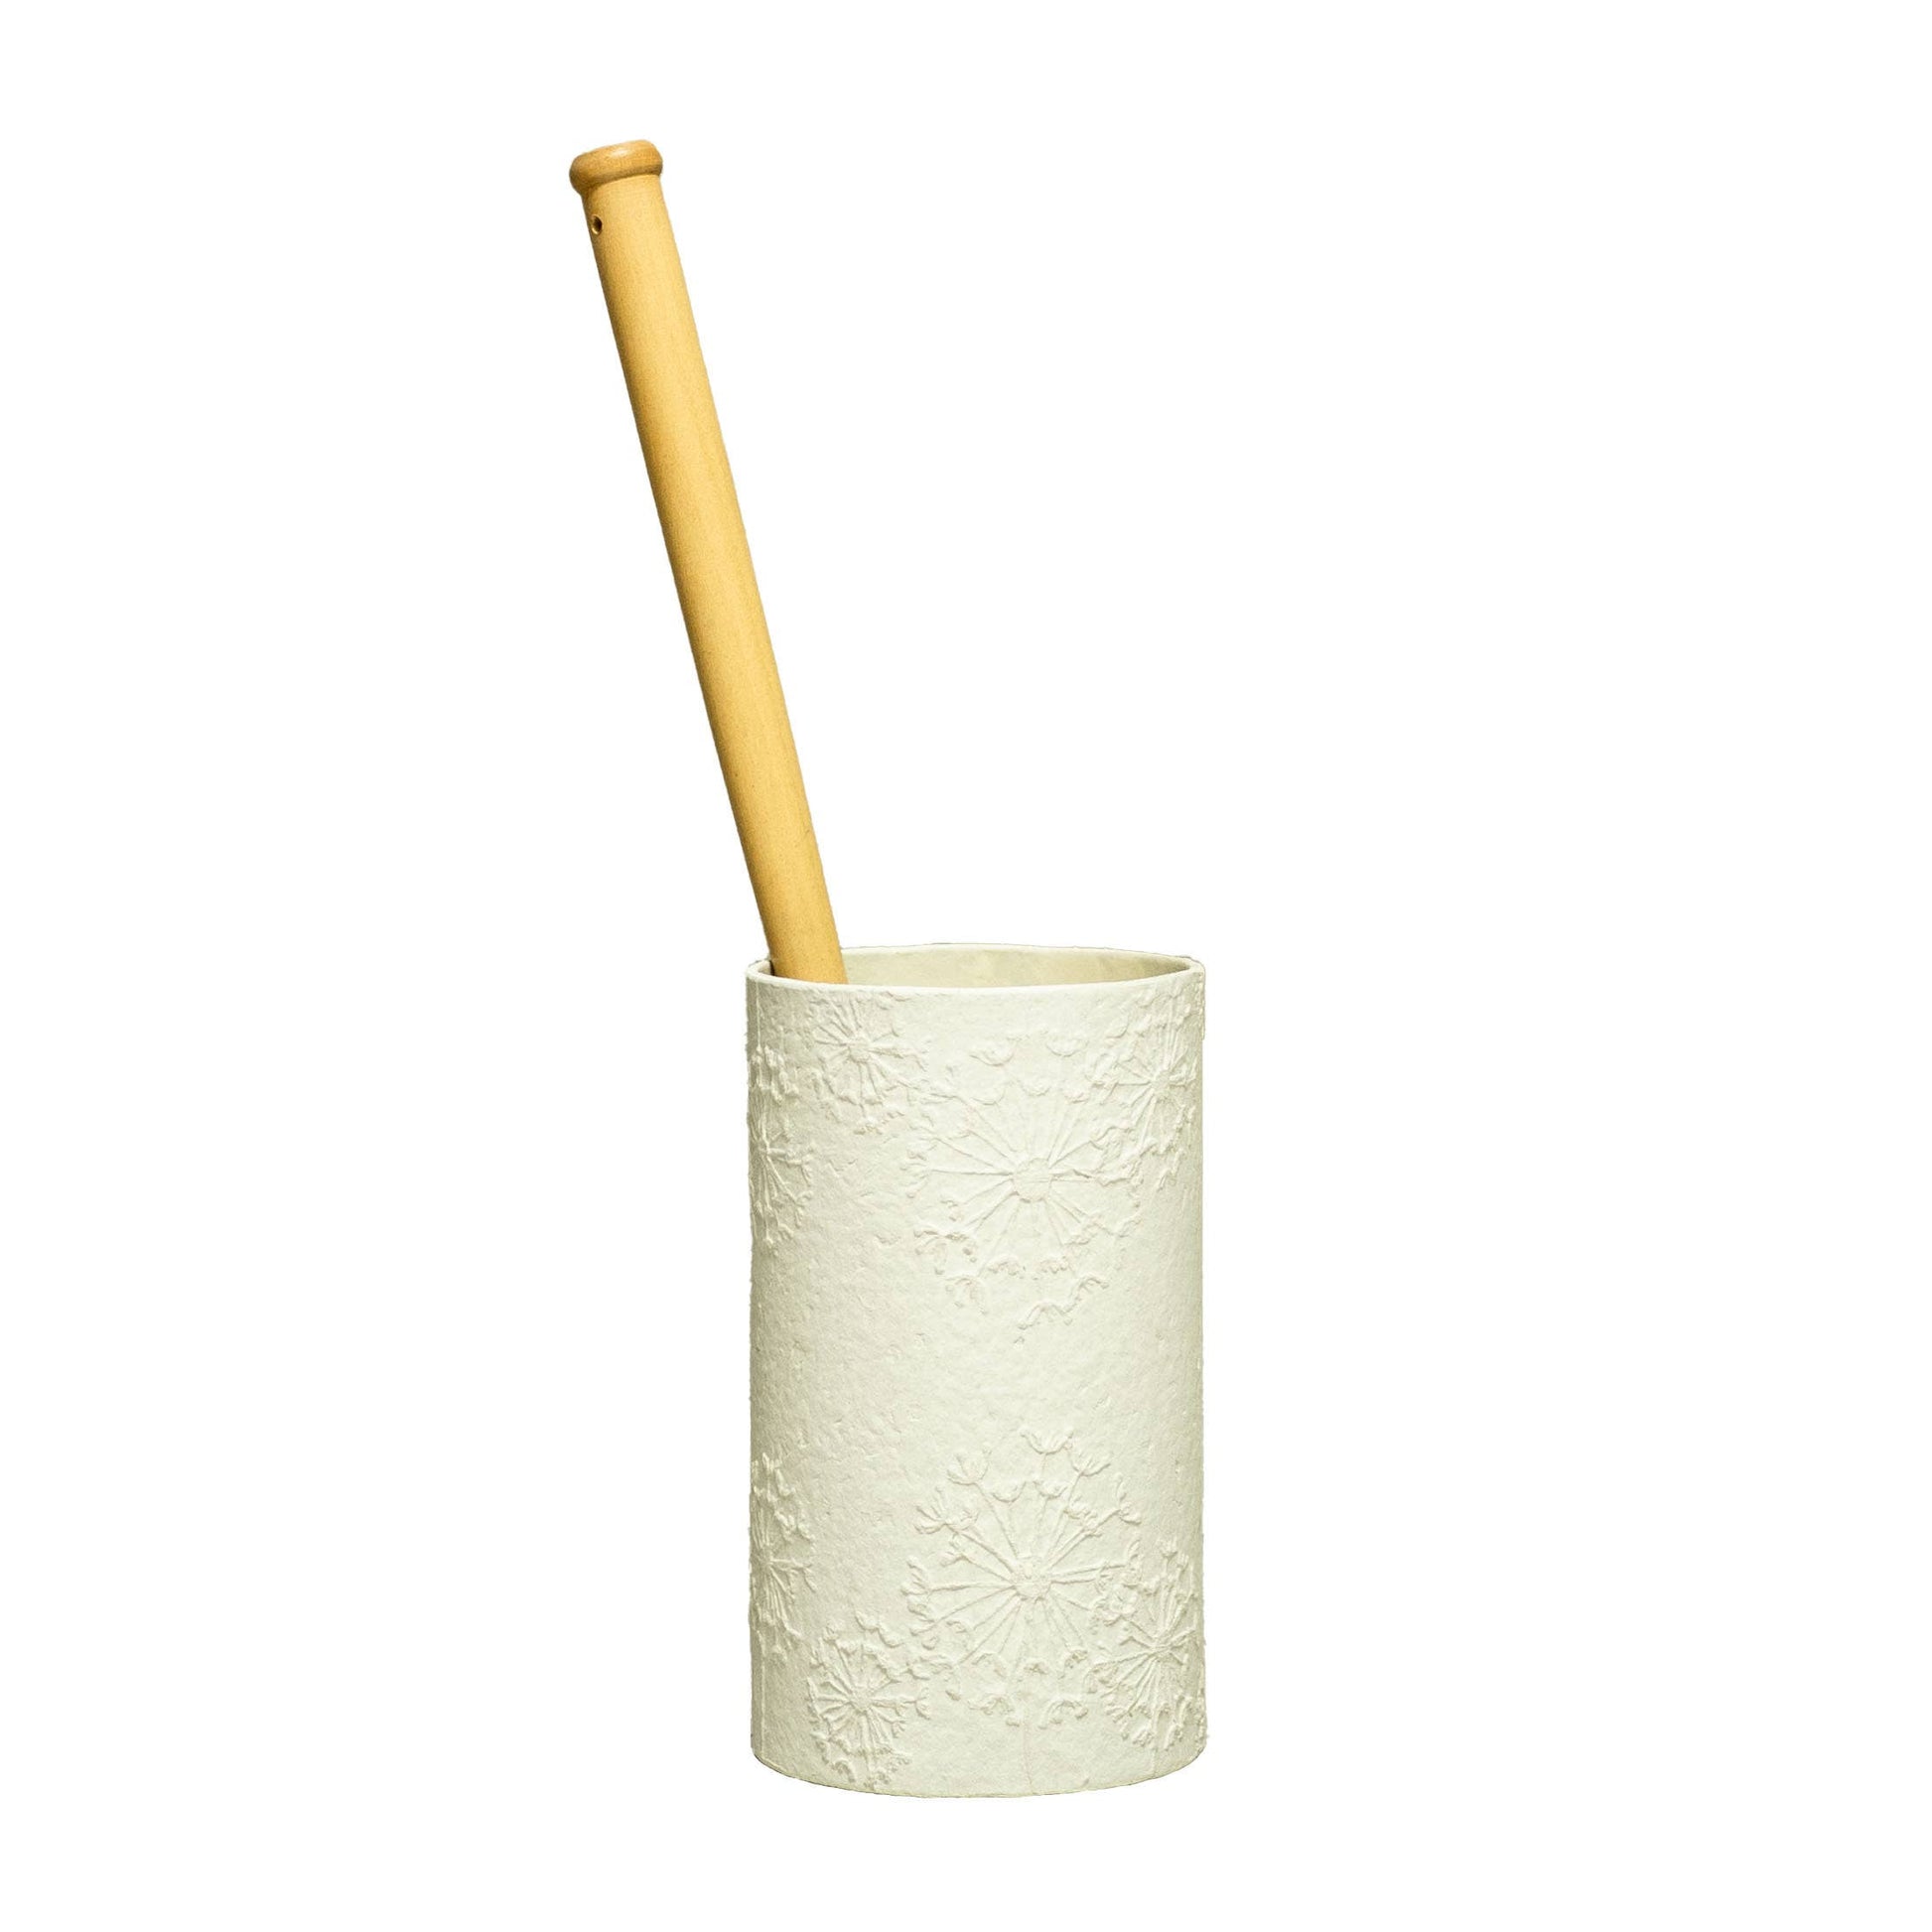 Ethical Global - NEW Toilet Brush & White Dandelion Holder - Plastic Free Ethical Global